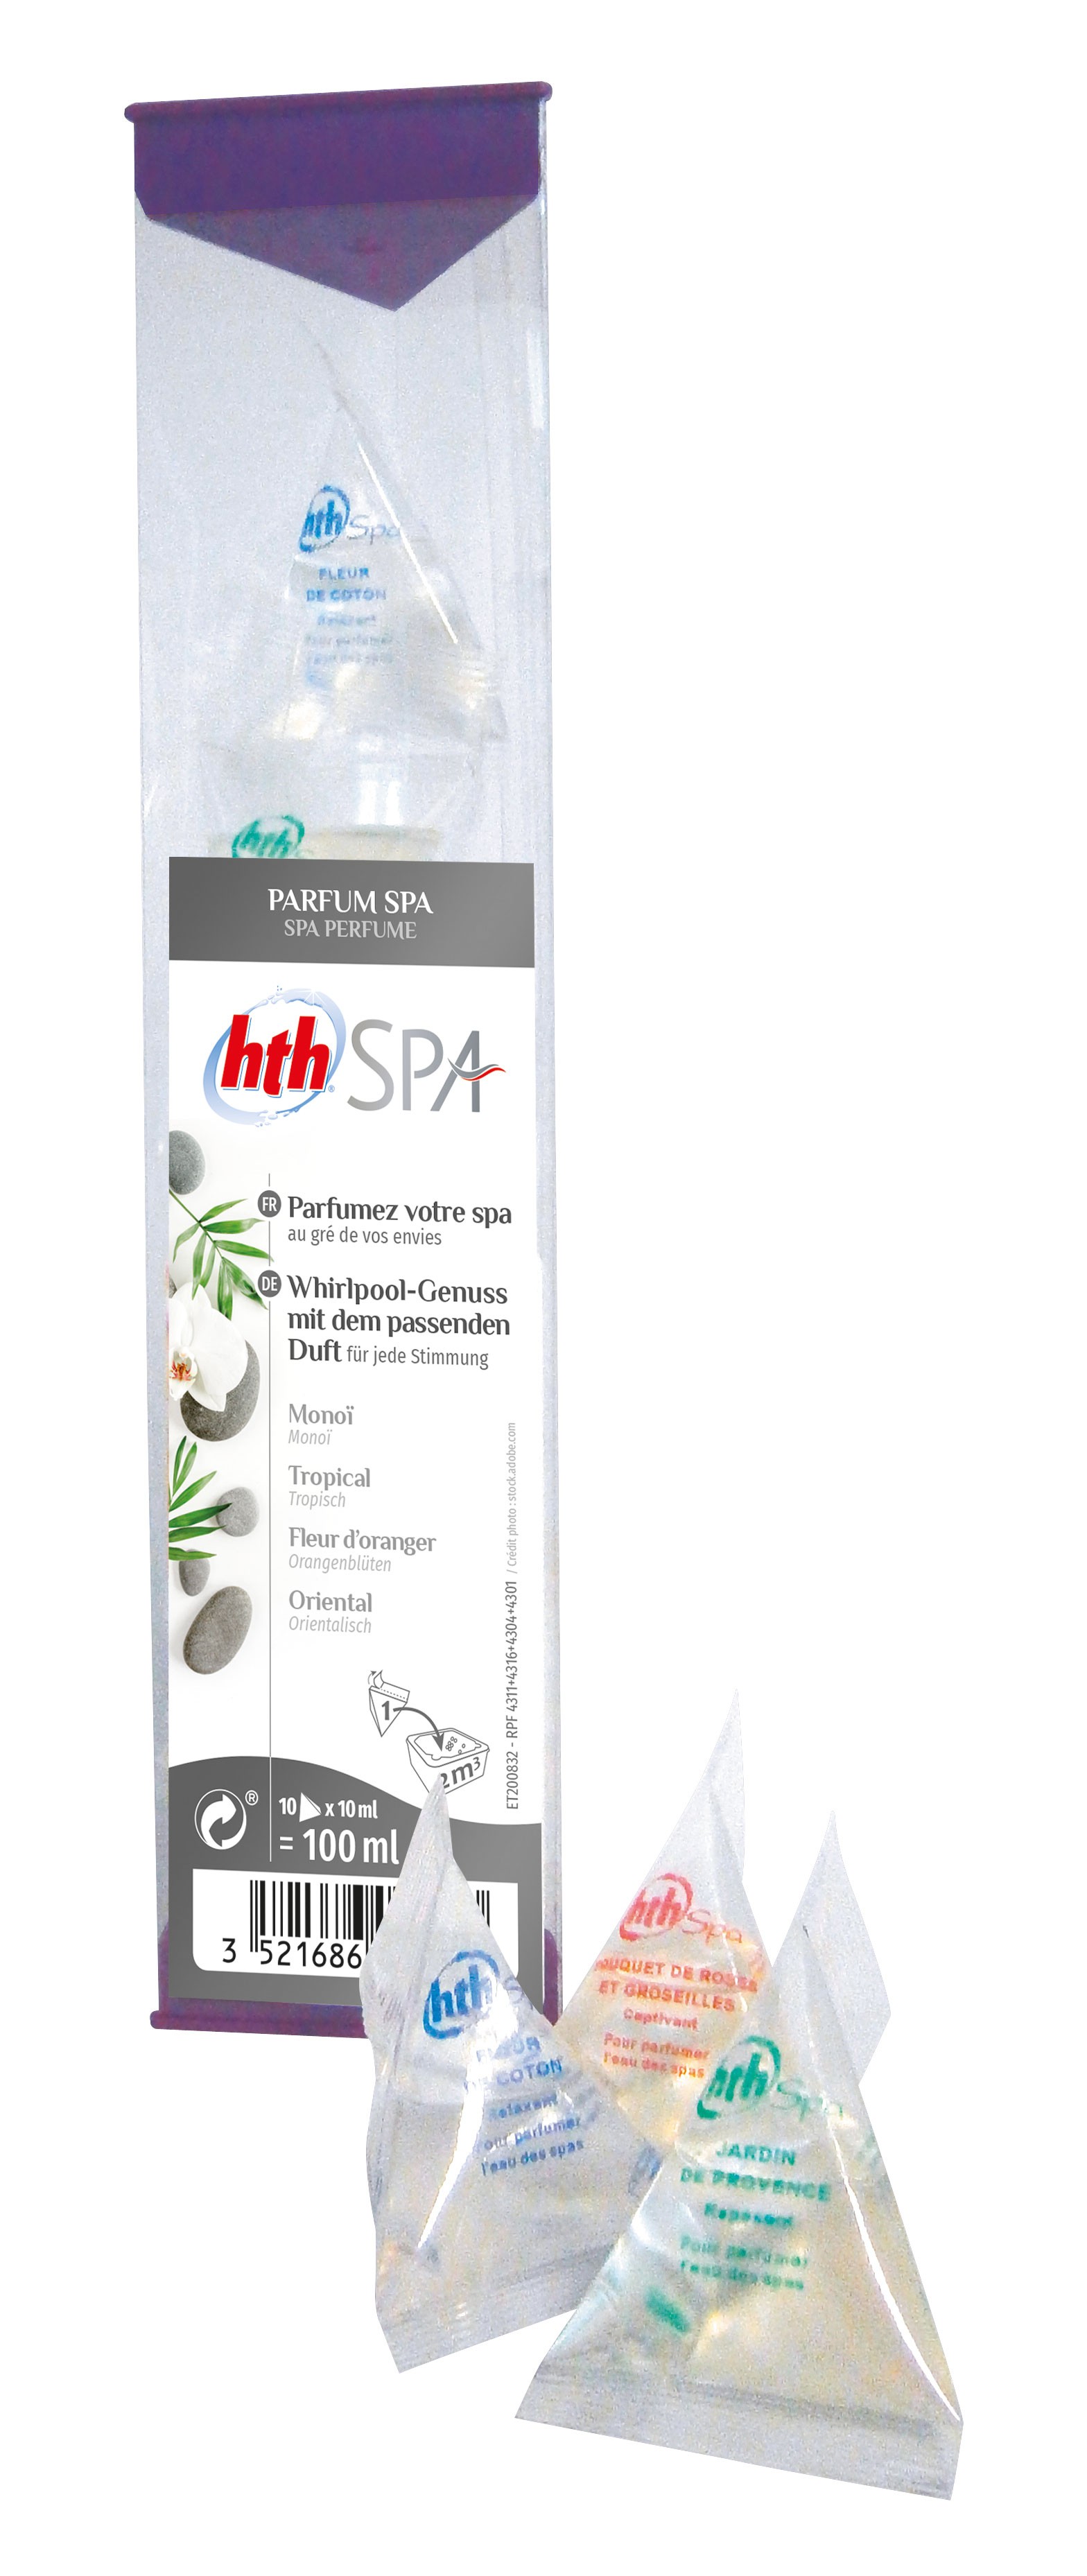 HTH Spa - Parfum spa monoï 200mL